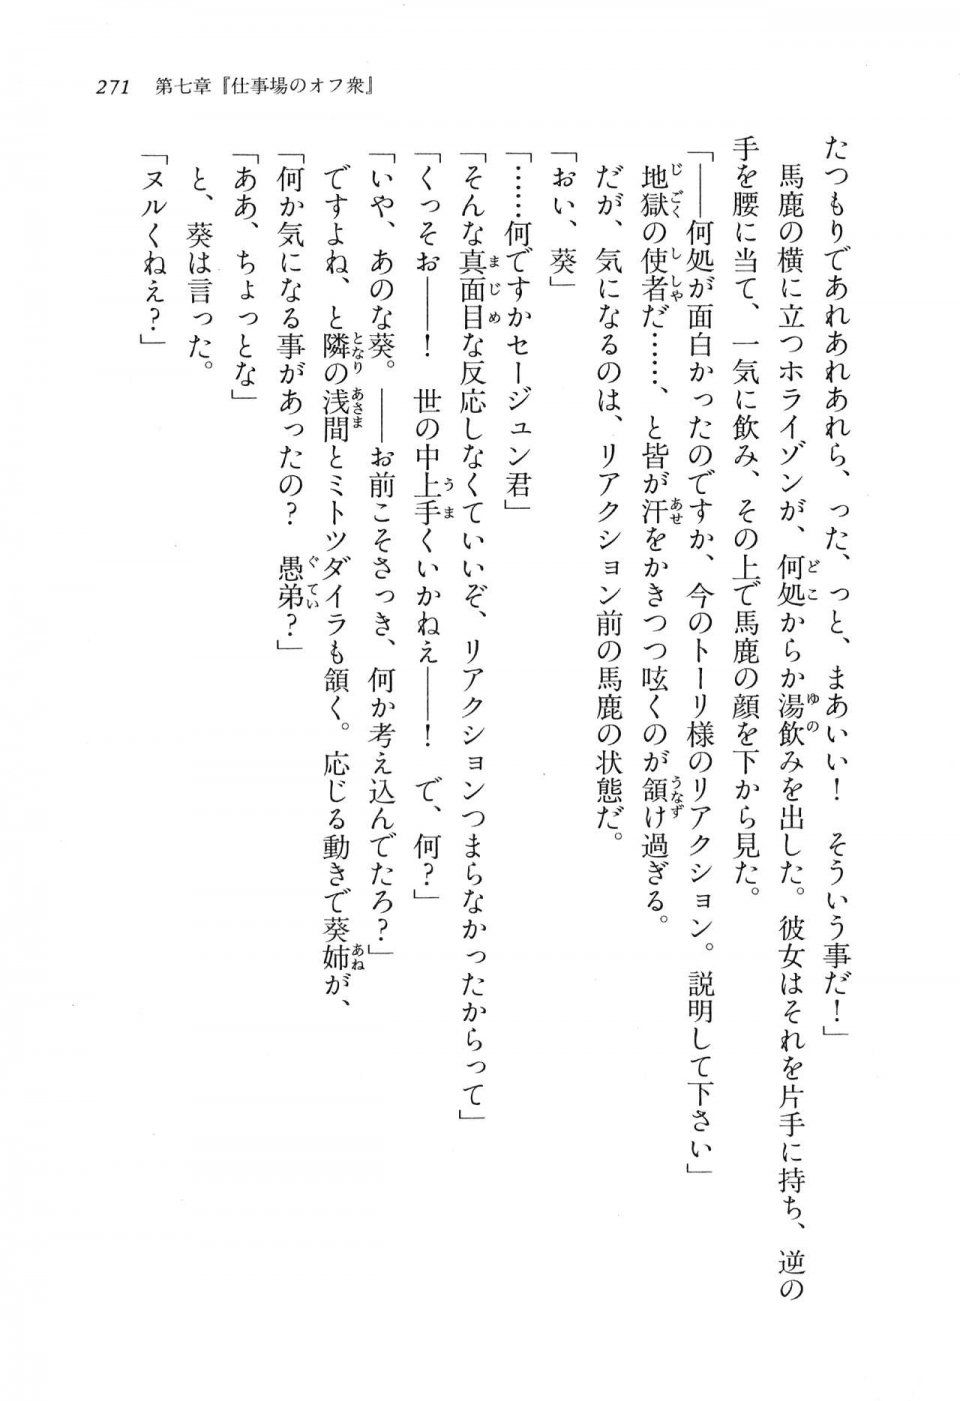 Kyoukai Senjou no Horizon LN Vol 16(7A) - Photo #271